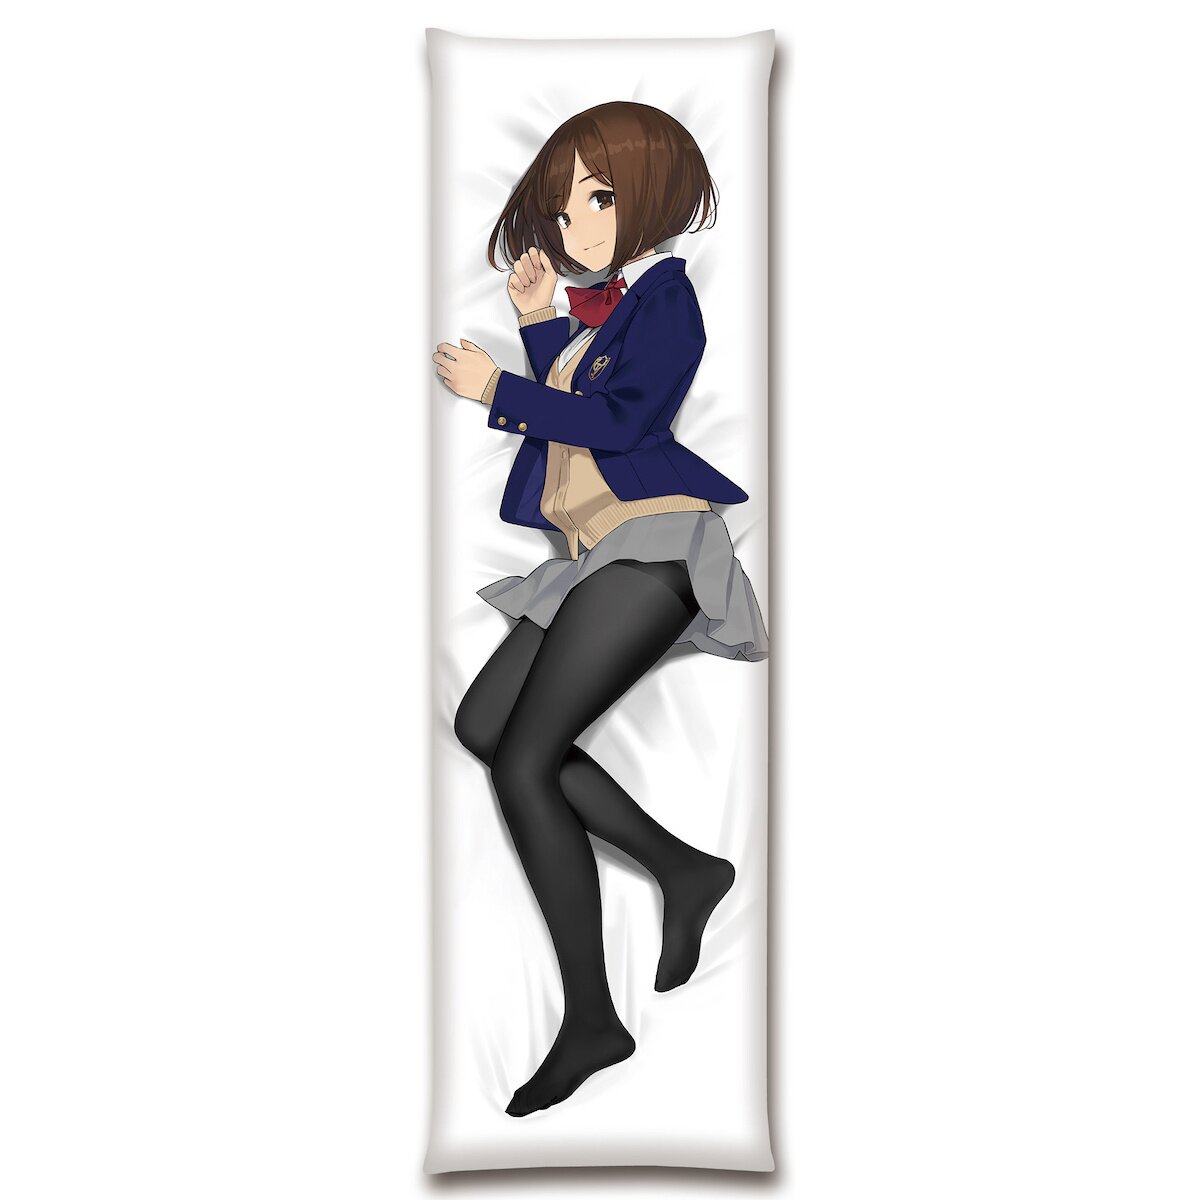 Anime body pillow